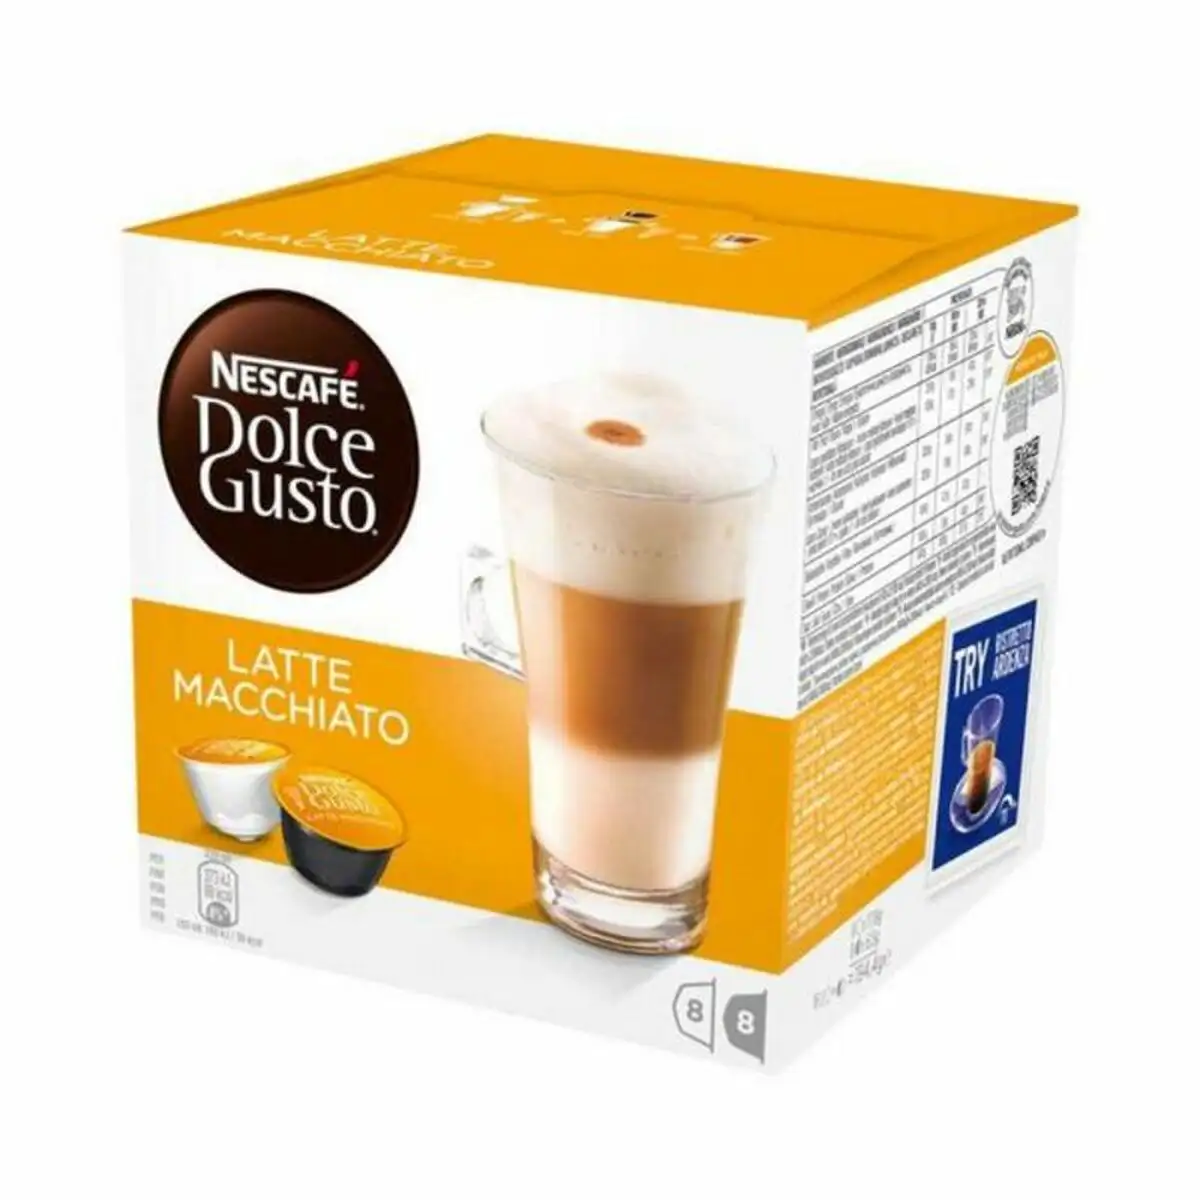 Coffret nescafe dolce gusto 98386 latte macchiato 16 uds _8749. DIAYTAR SENEGAL - Où la Qualité et la Diversité Fusionnent. Explorez notre boutique en ligne pour découvrir une gamme variée de produits qui incarnent l'excellence et l'authenticité.